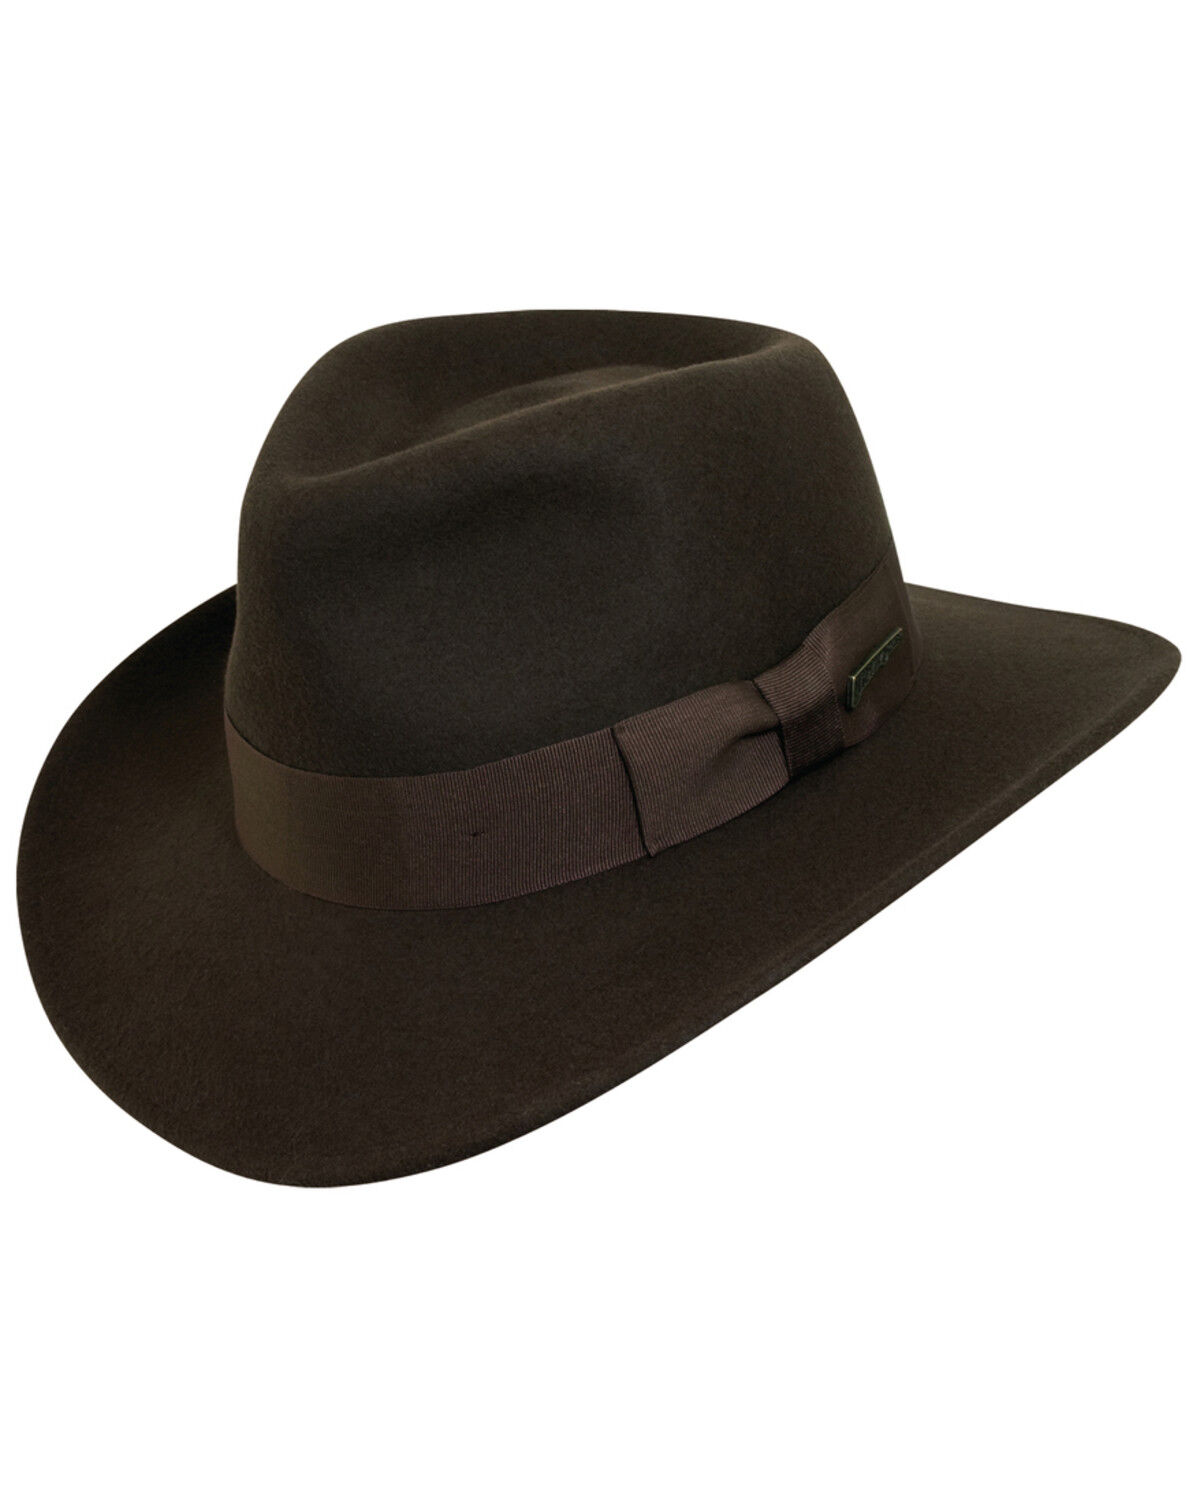 Indiana Jones Hats \u0026 Fedoras - Sheplers